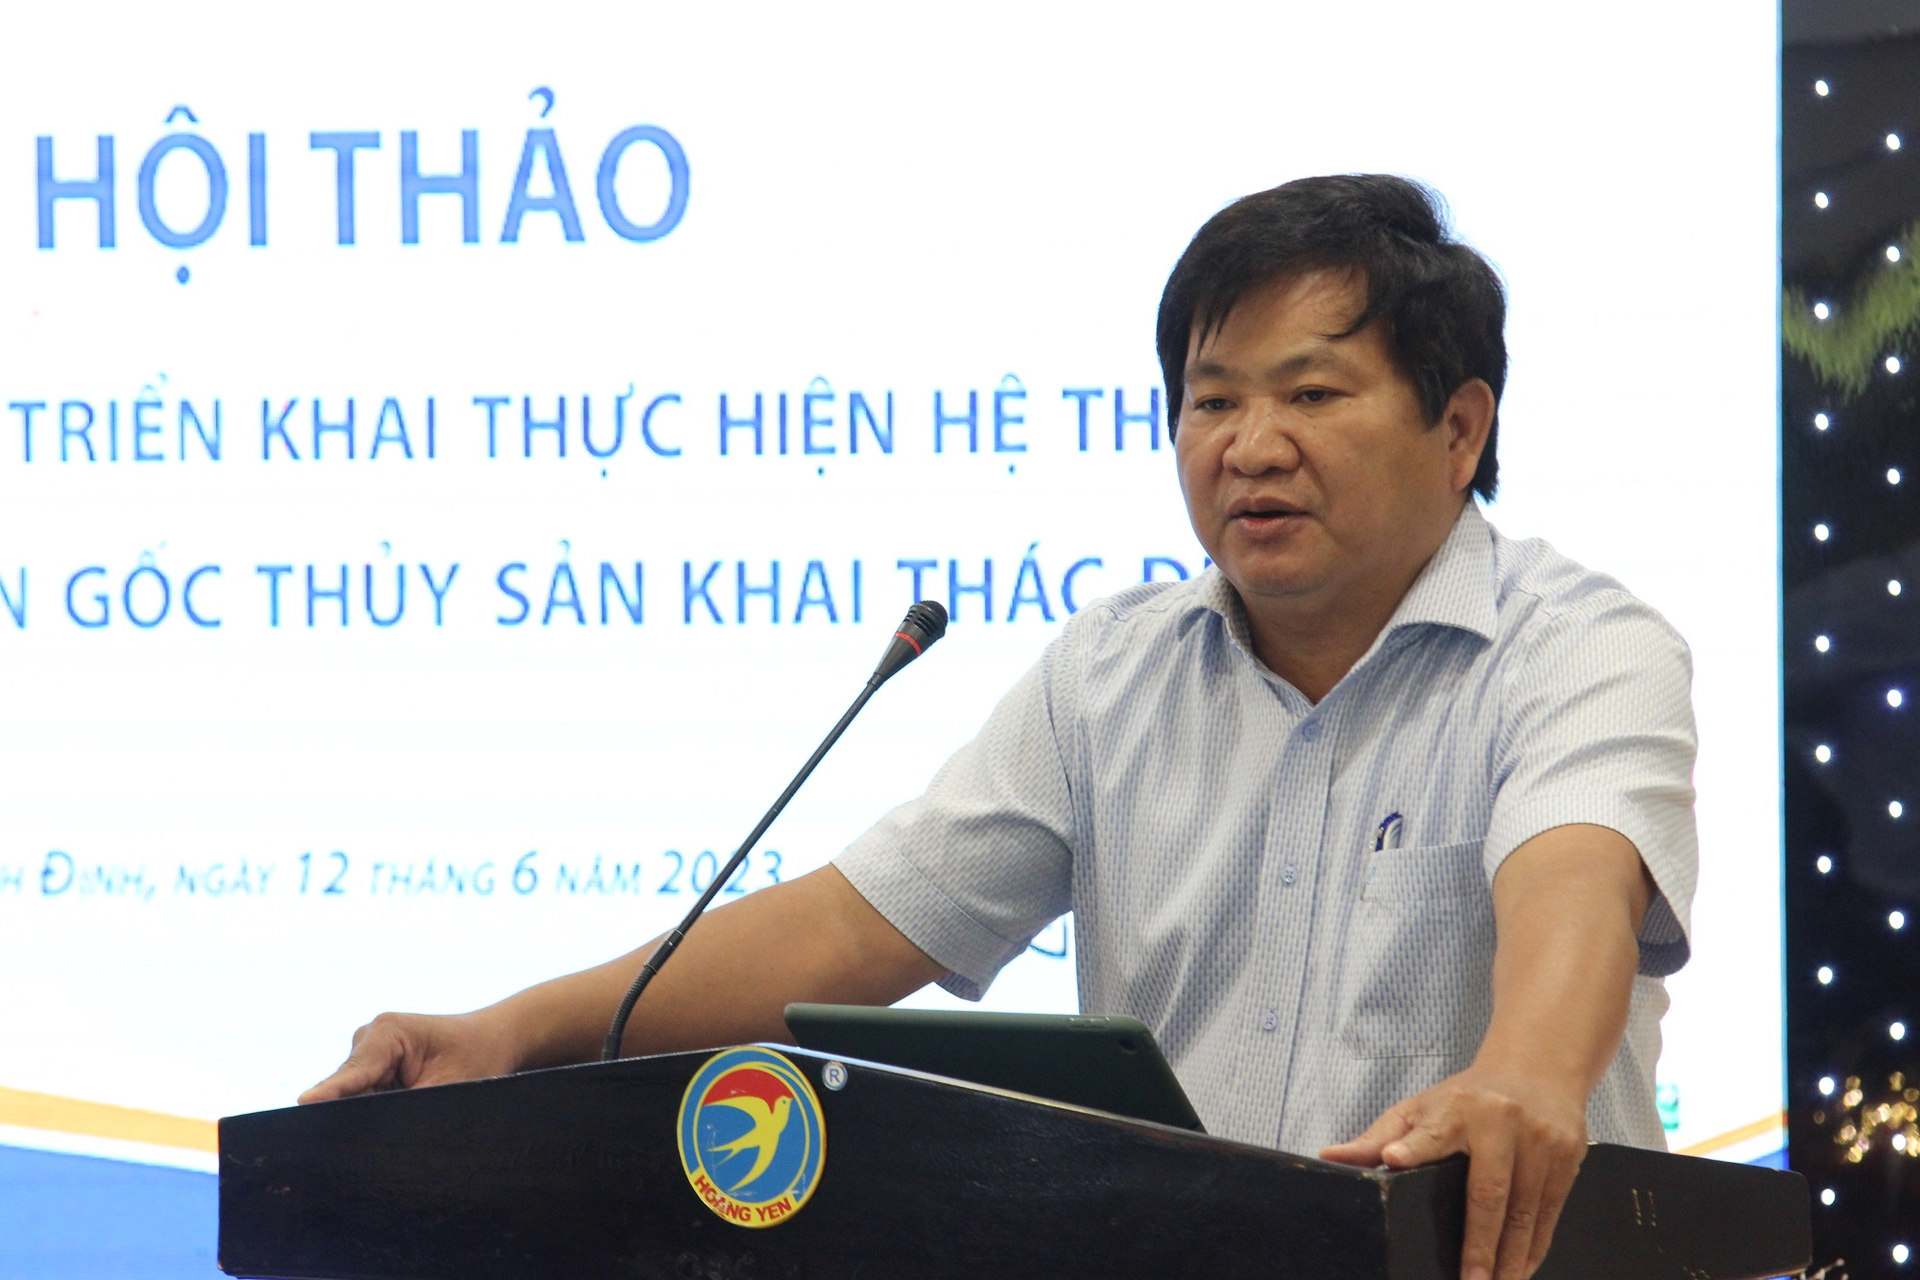 Ông Trần Văn Phúc, Giám đốc Sở NN-PTNT Bình Định, phát biểu tại hội thảo. Ảnh: V.Đ.T.